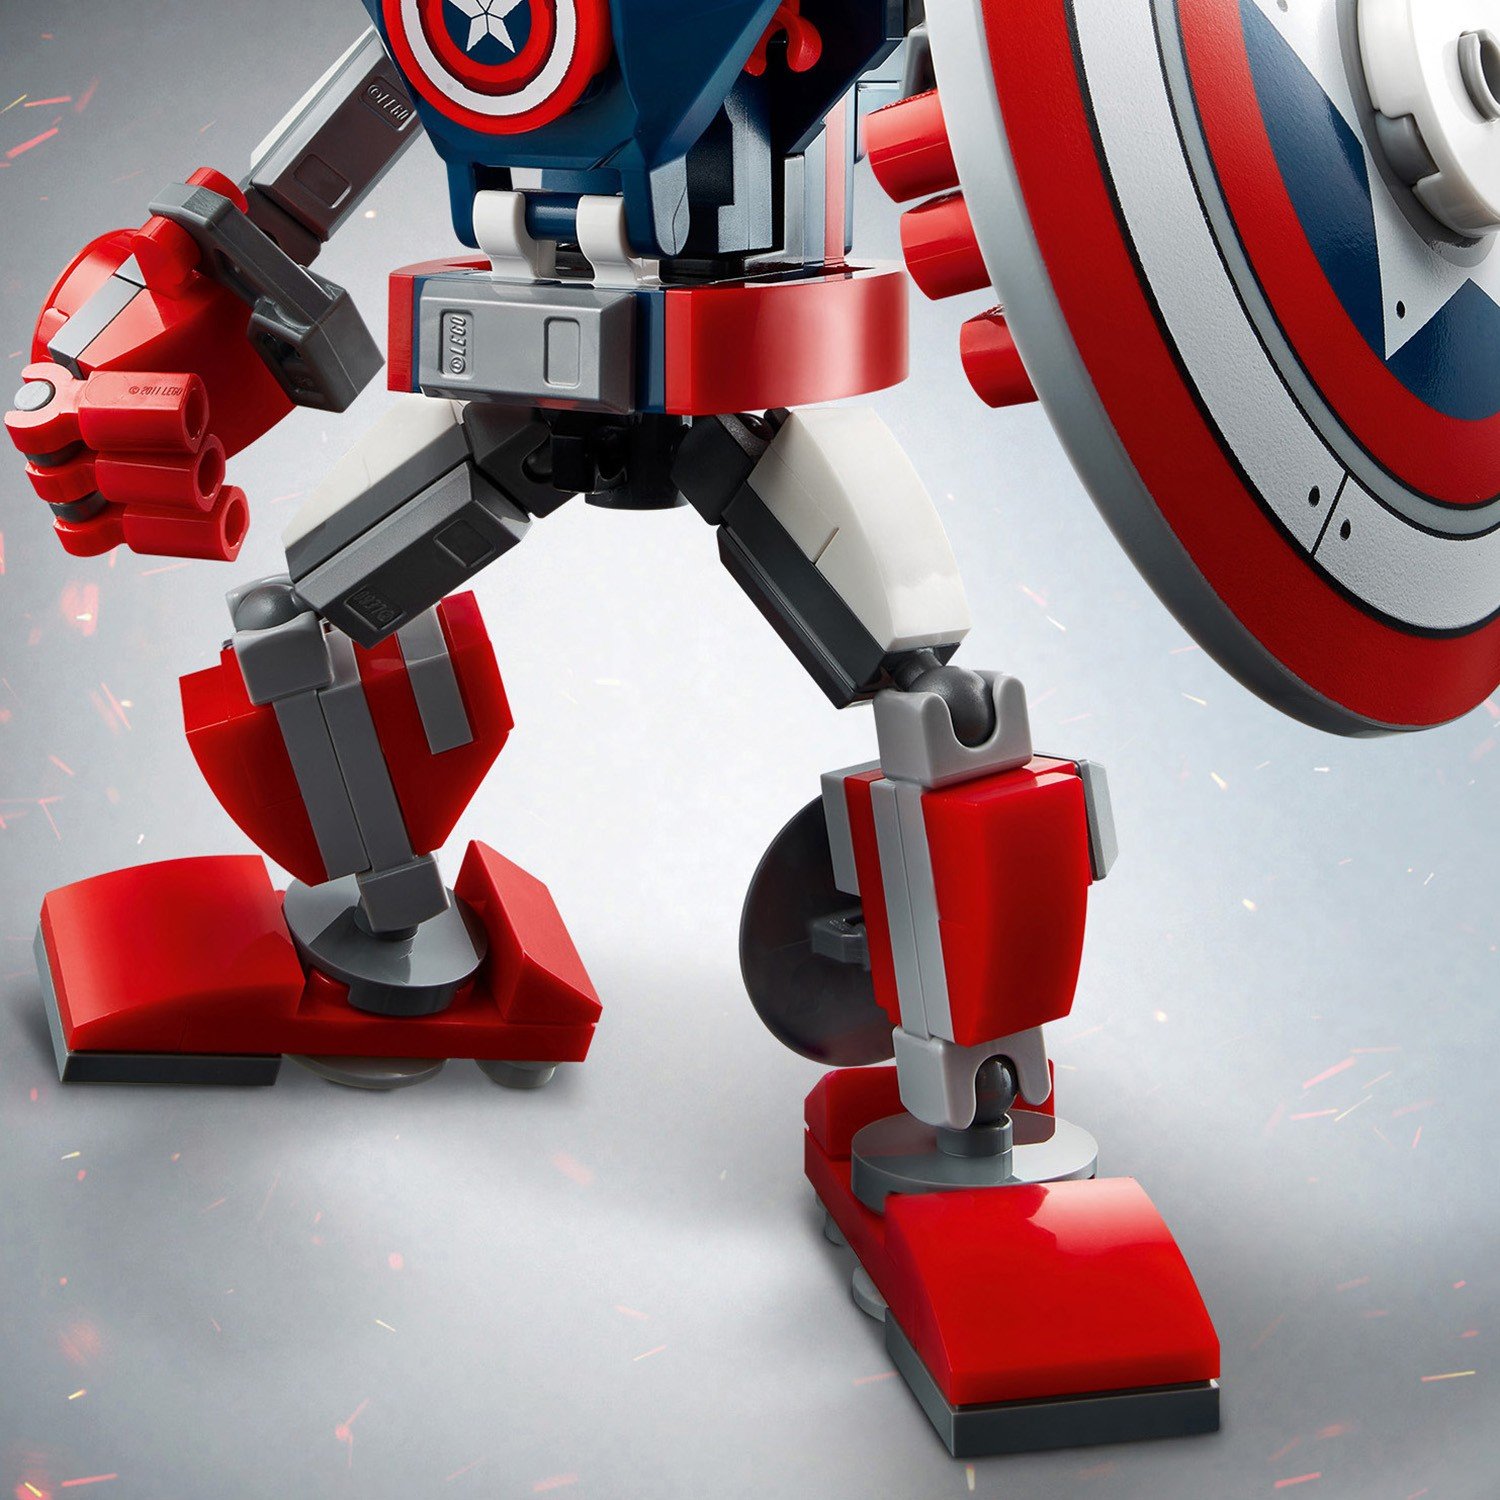 Lego Super Heroes 76168 Капитан Америка: Робот